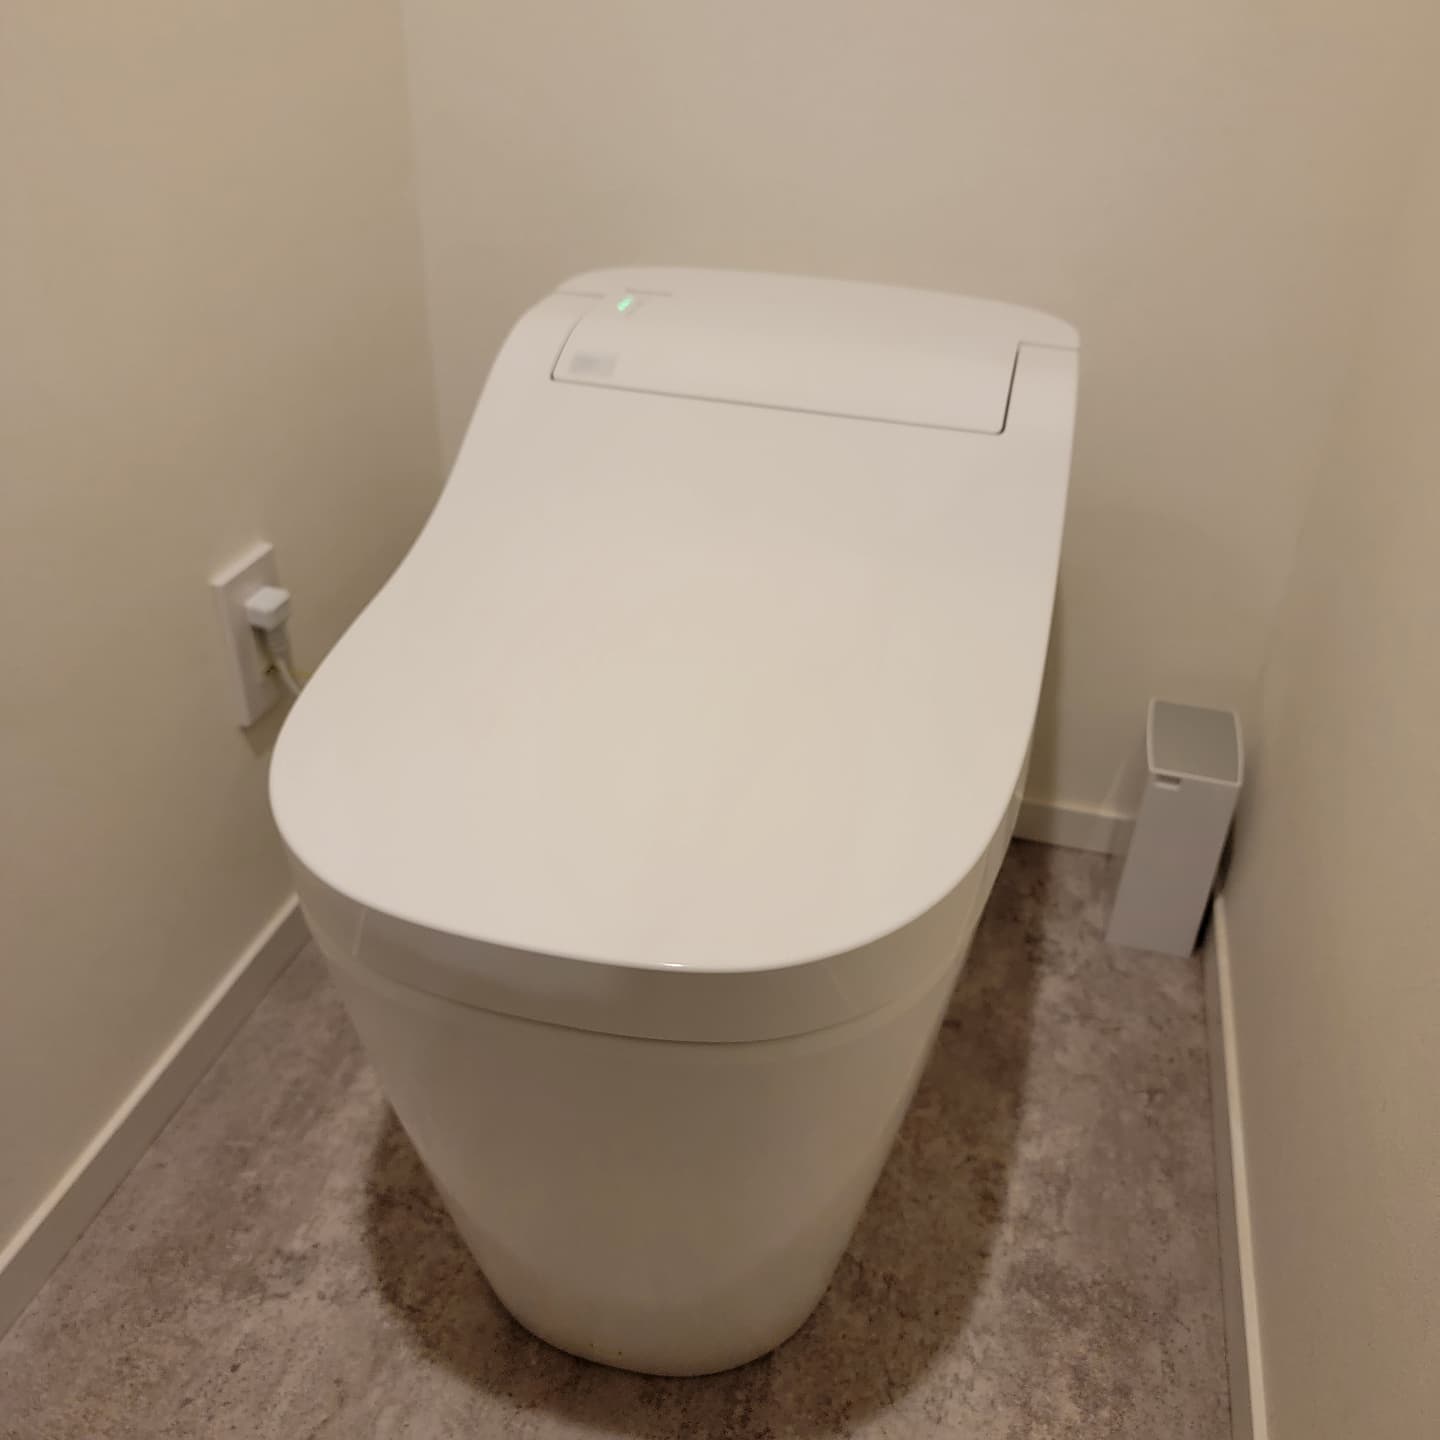 ベックスデザインです

住宅トイレの販売・設置をさせて頂きました。
ベックスデザインでは、
トイレ、キッチンなどの
住宅設備の販売・設置にも対応致します

#群馬県店舗デザイン　 #群馬県業務用エアコン　 　　